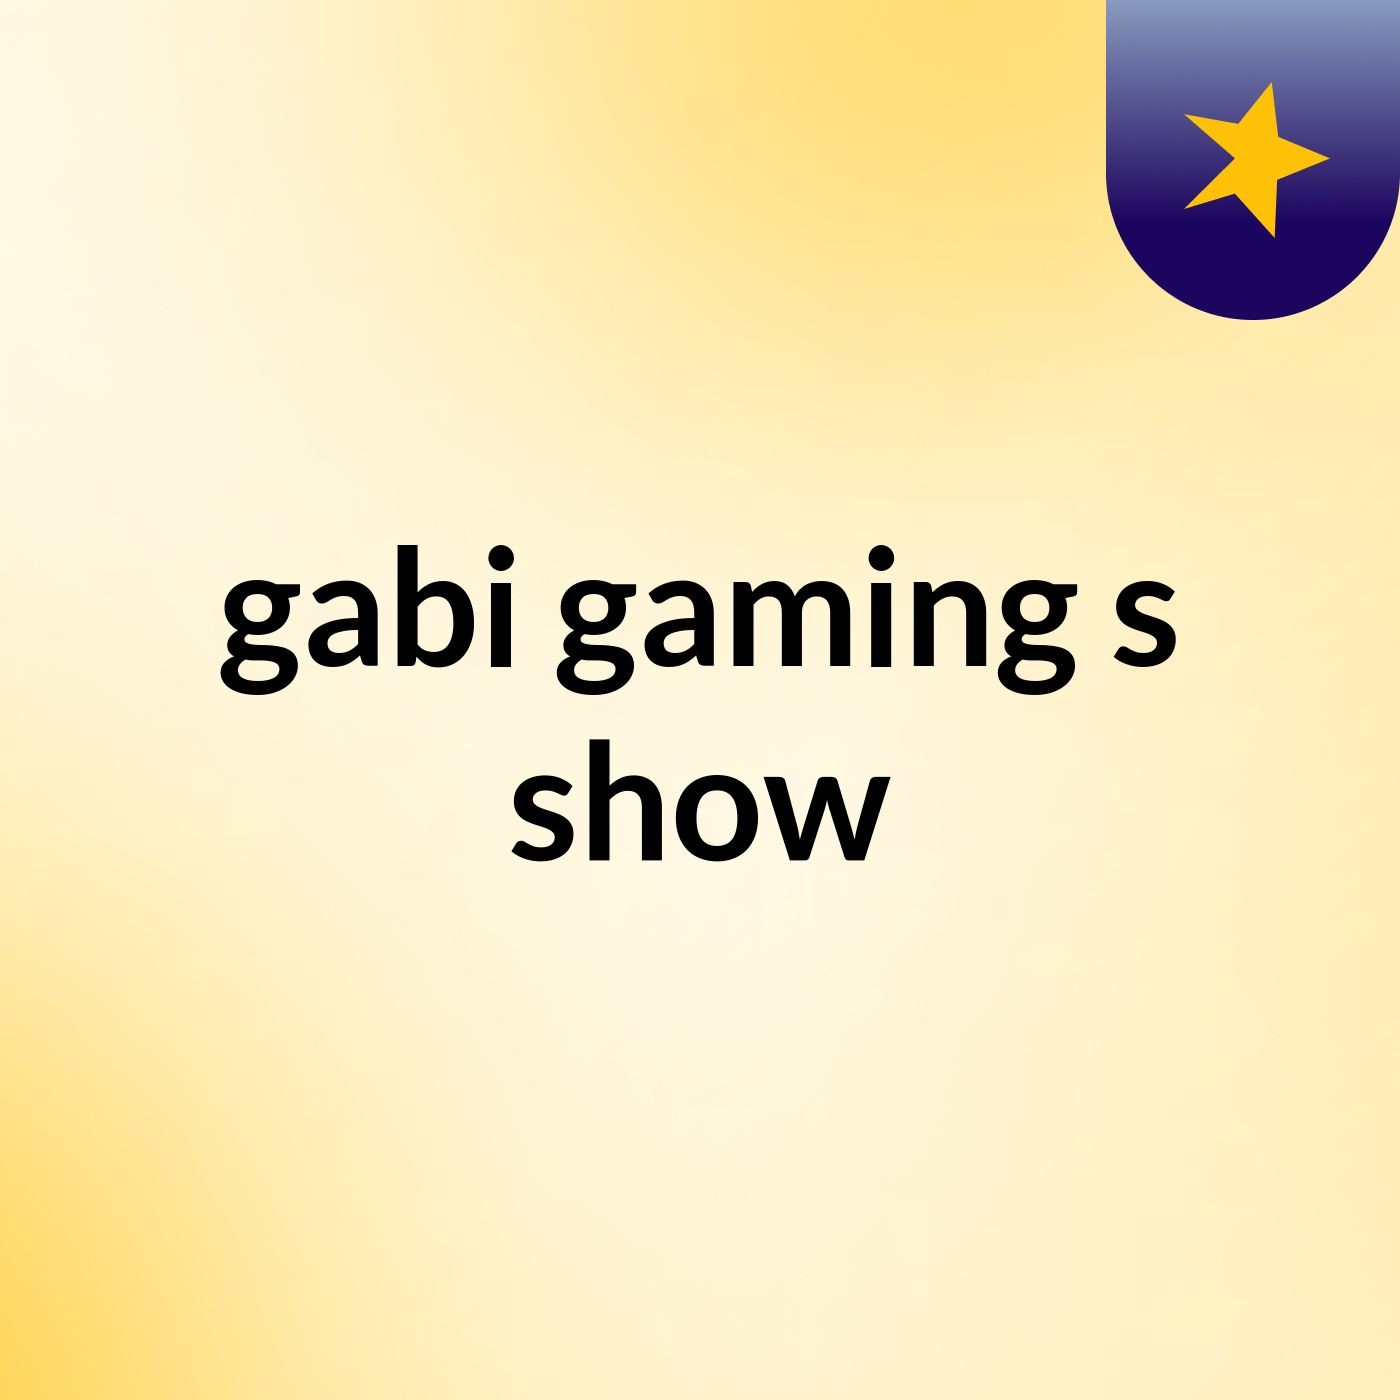 gabi gaming's show